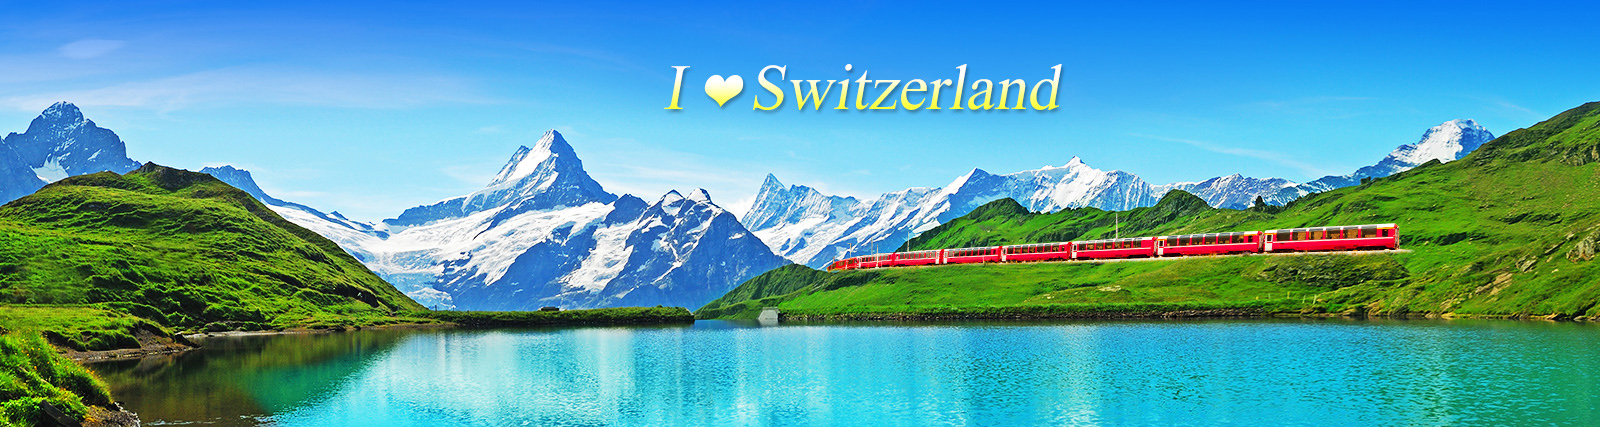 i_love_Switzerland